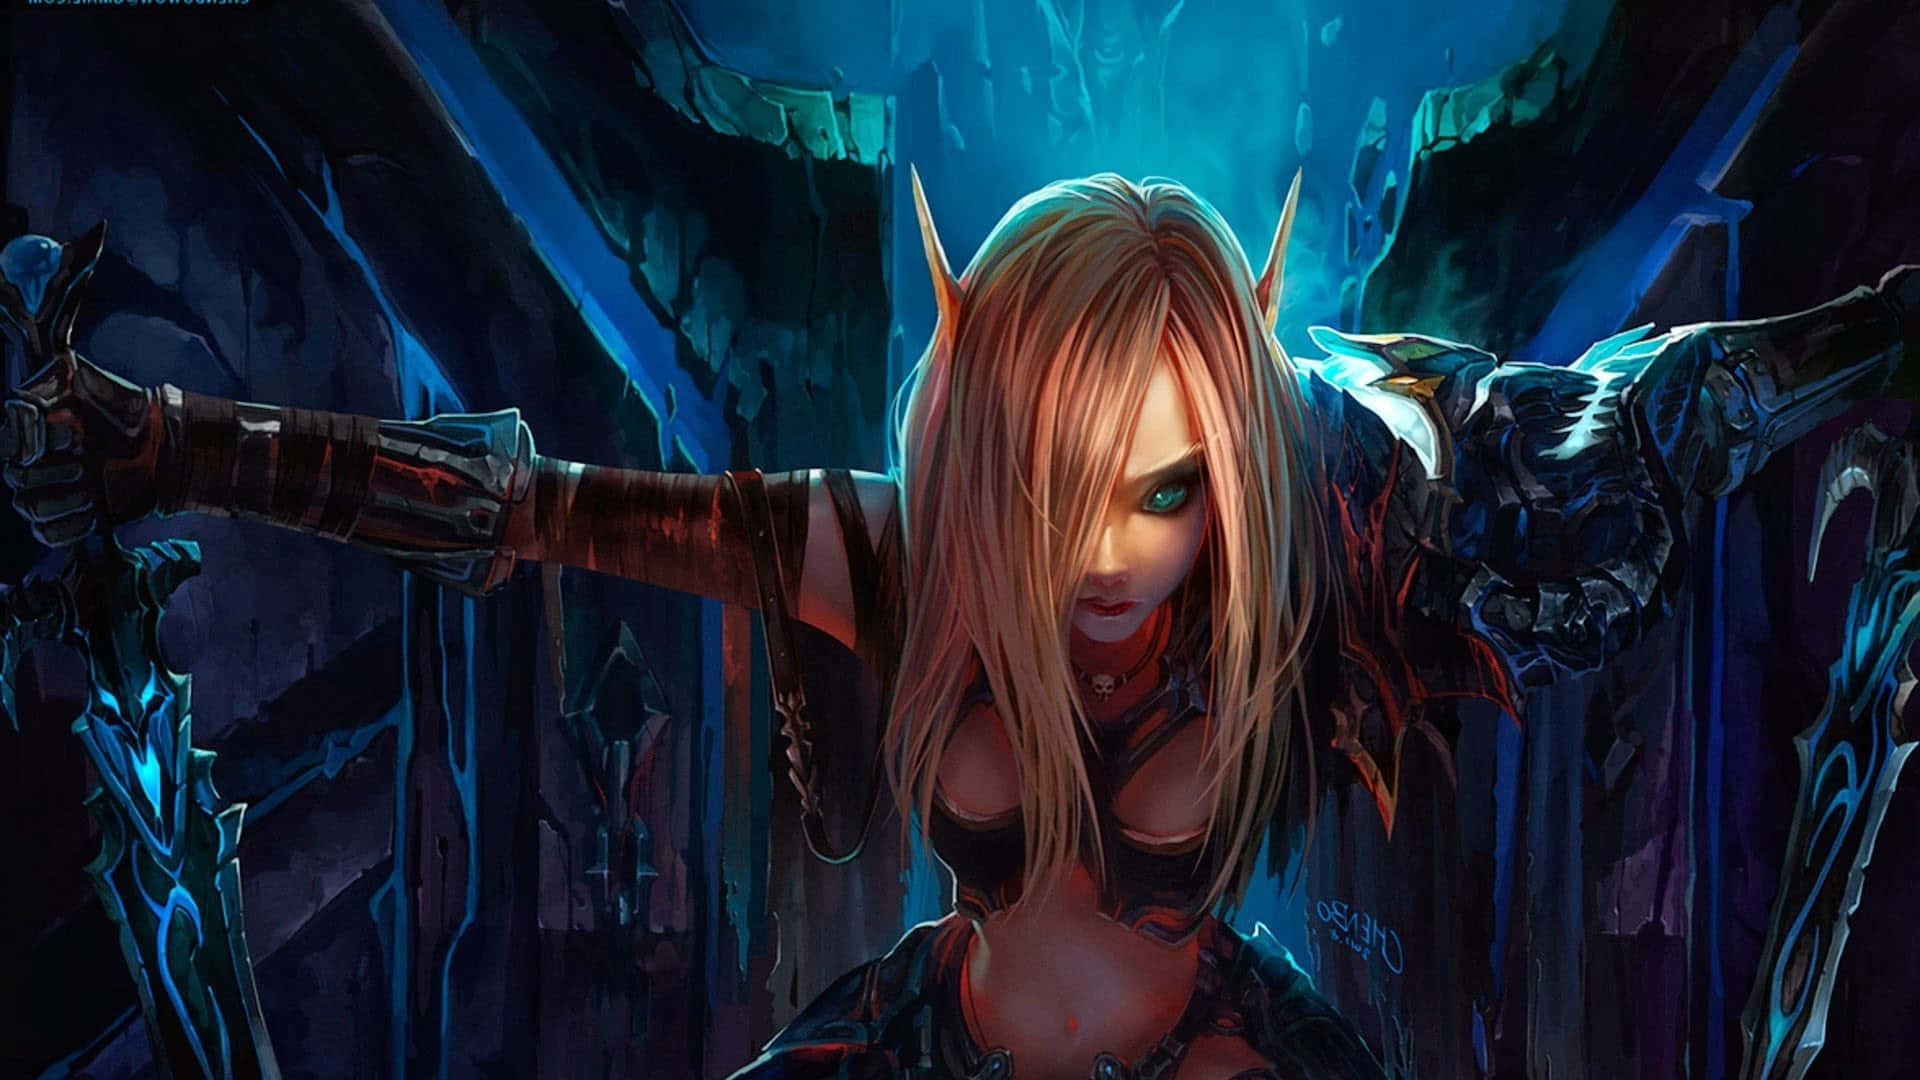 Episkaäventyr Väntar I World Of Warcraft. Wallpaper